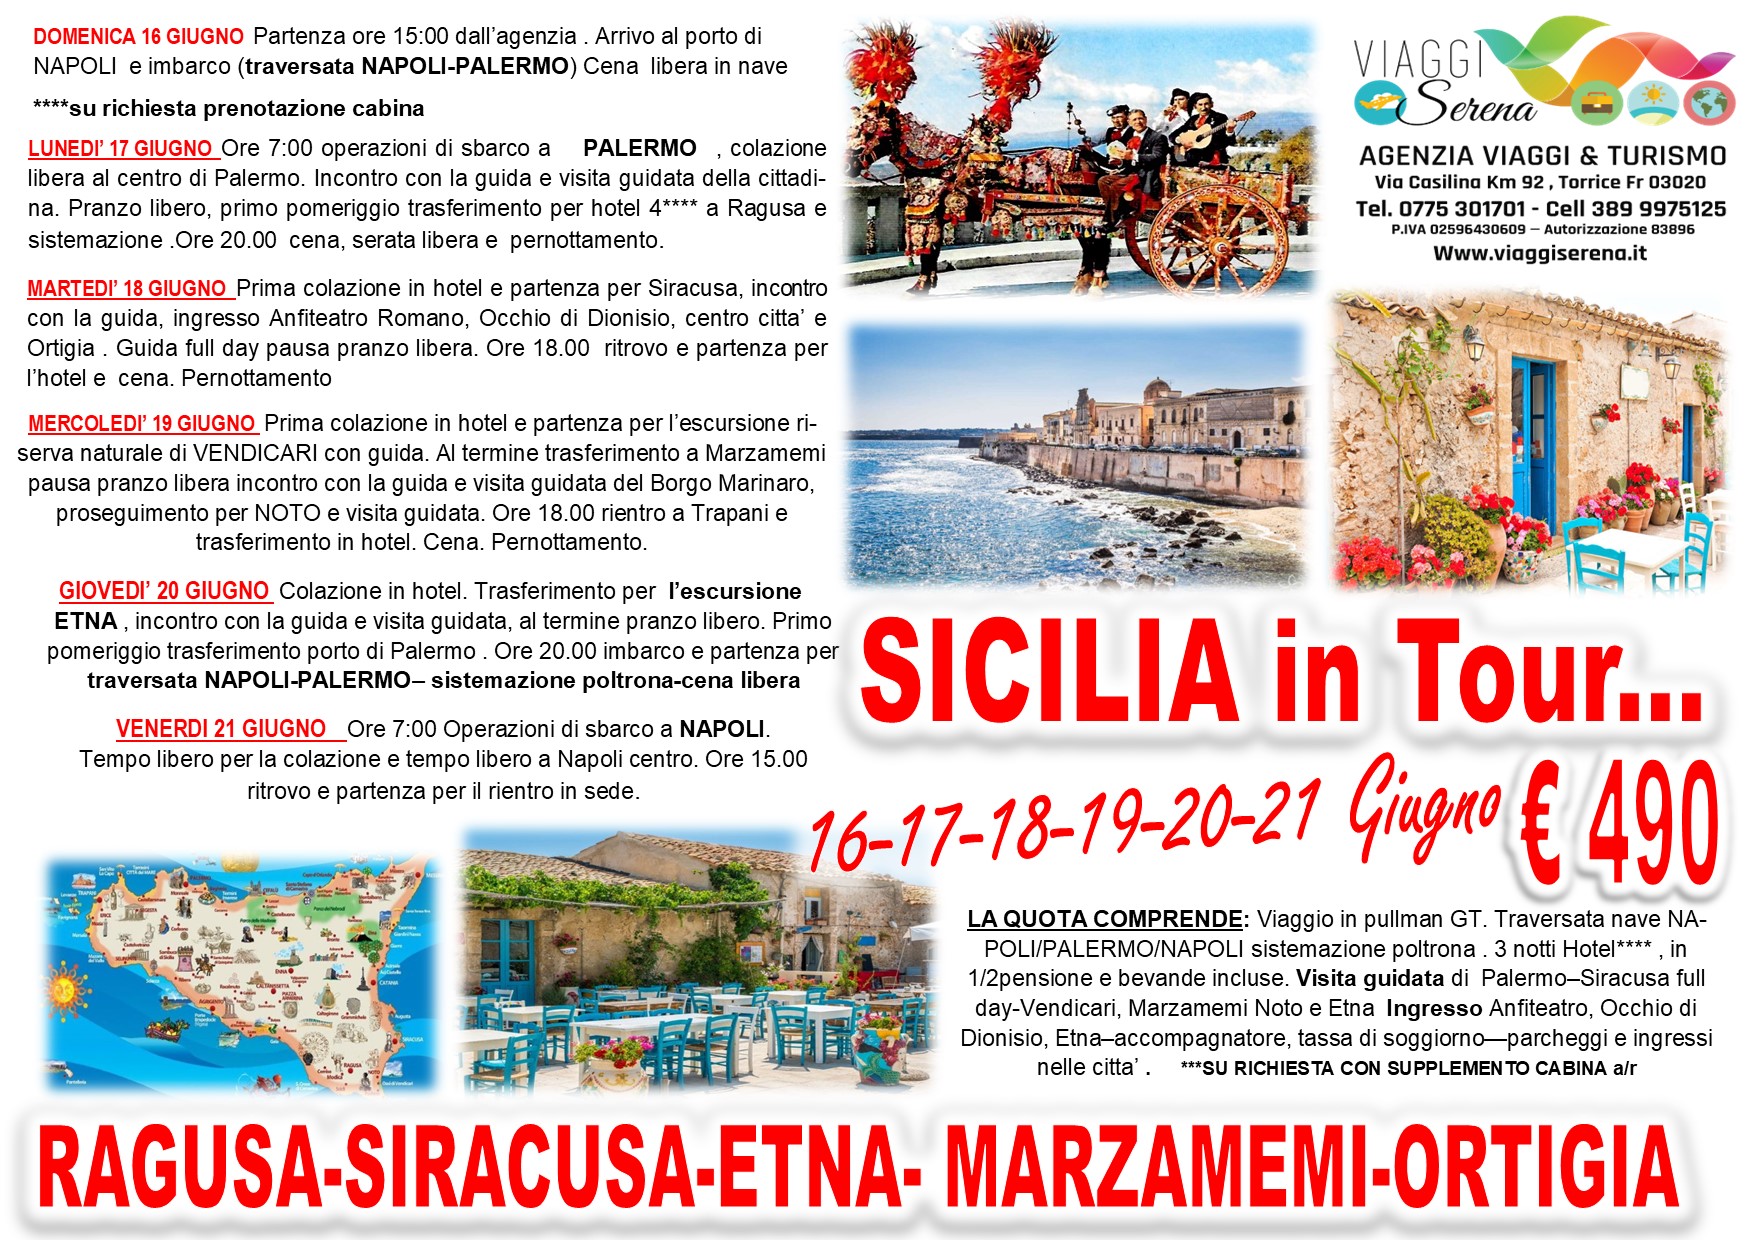 Viaggi di gruppo: Sicilia in Tour “Ragusa, Siracusa, Ortigia, Marzamemi e Etna” 16-21 Giugno € 490,00